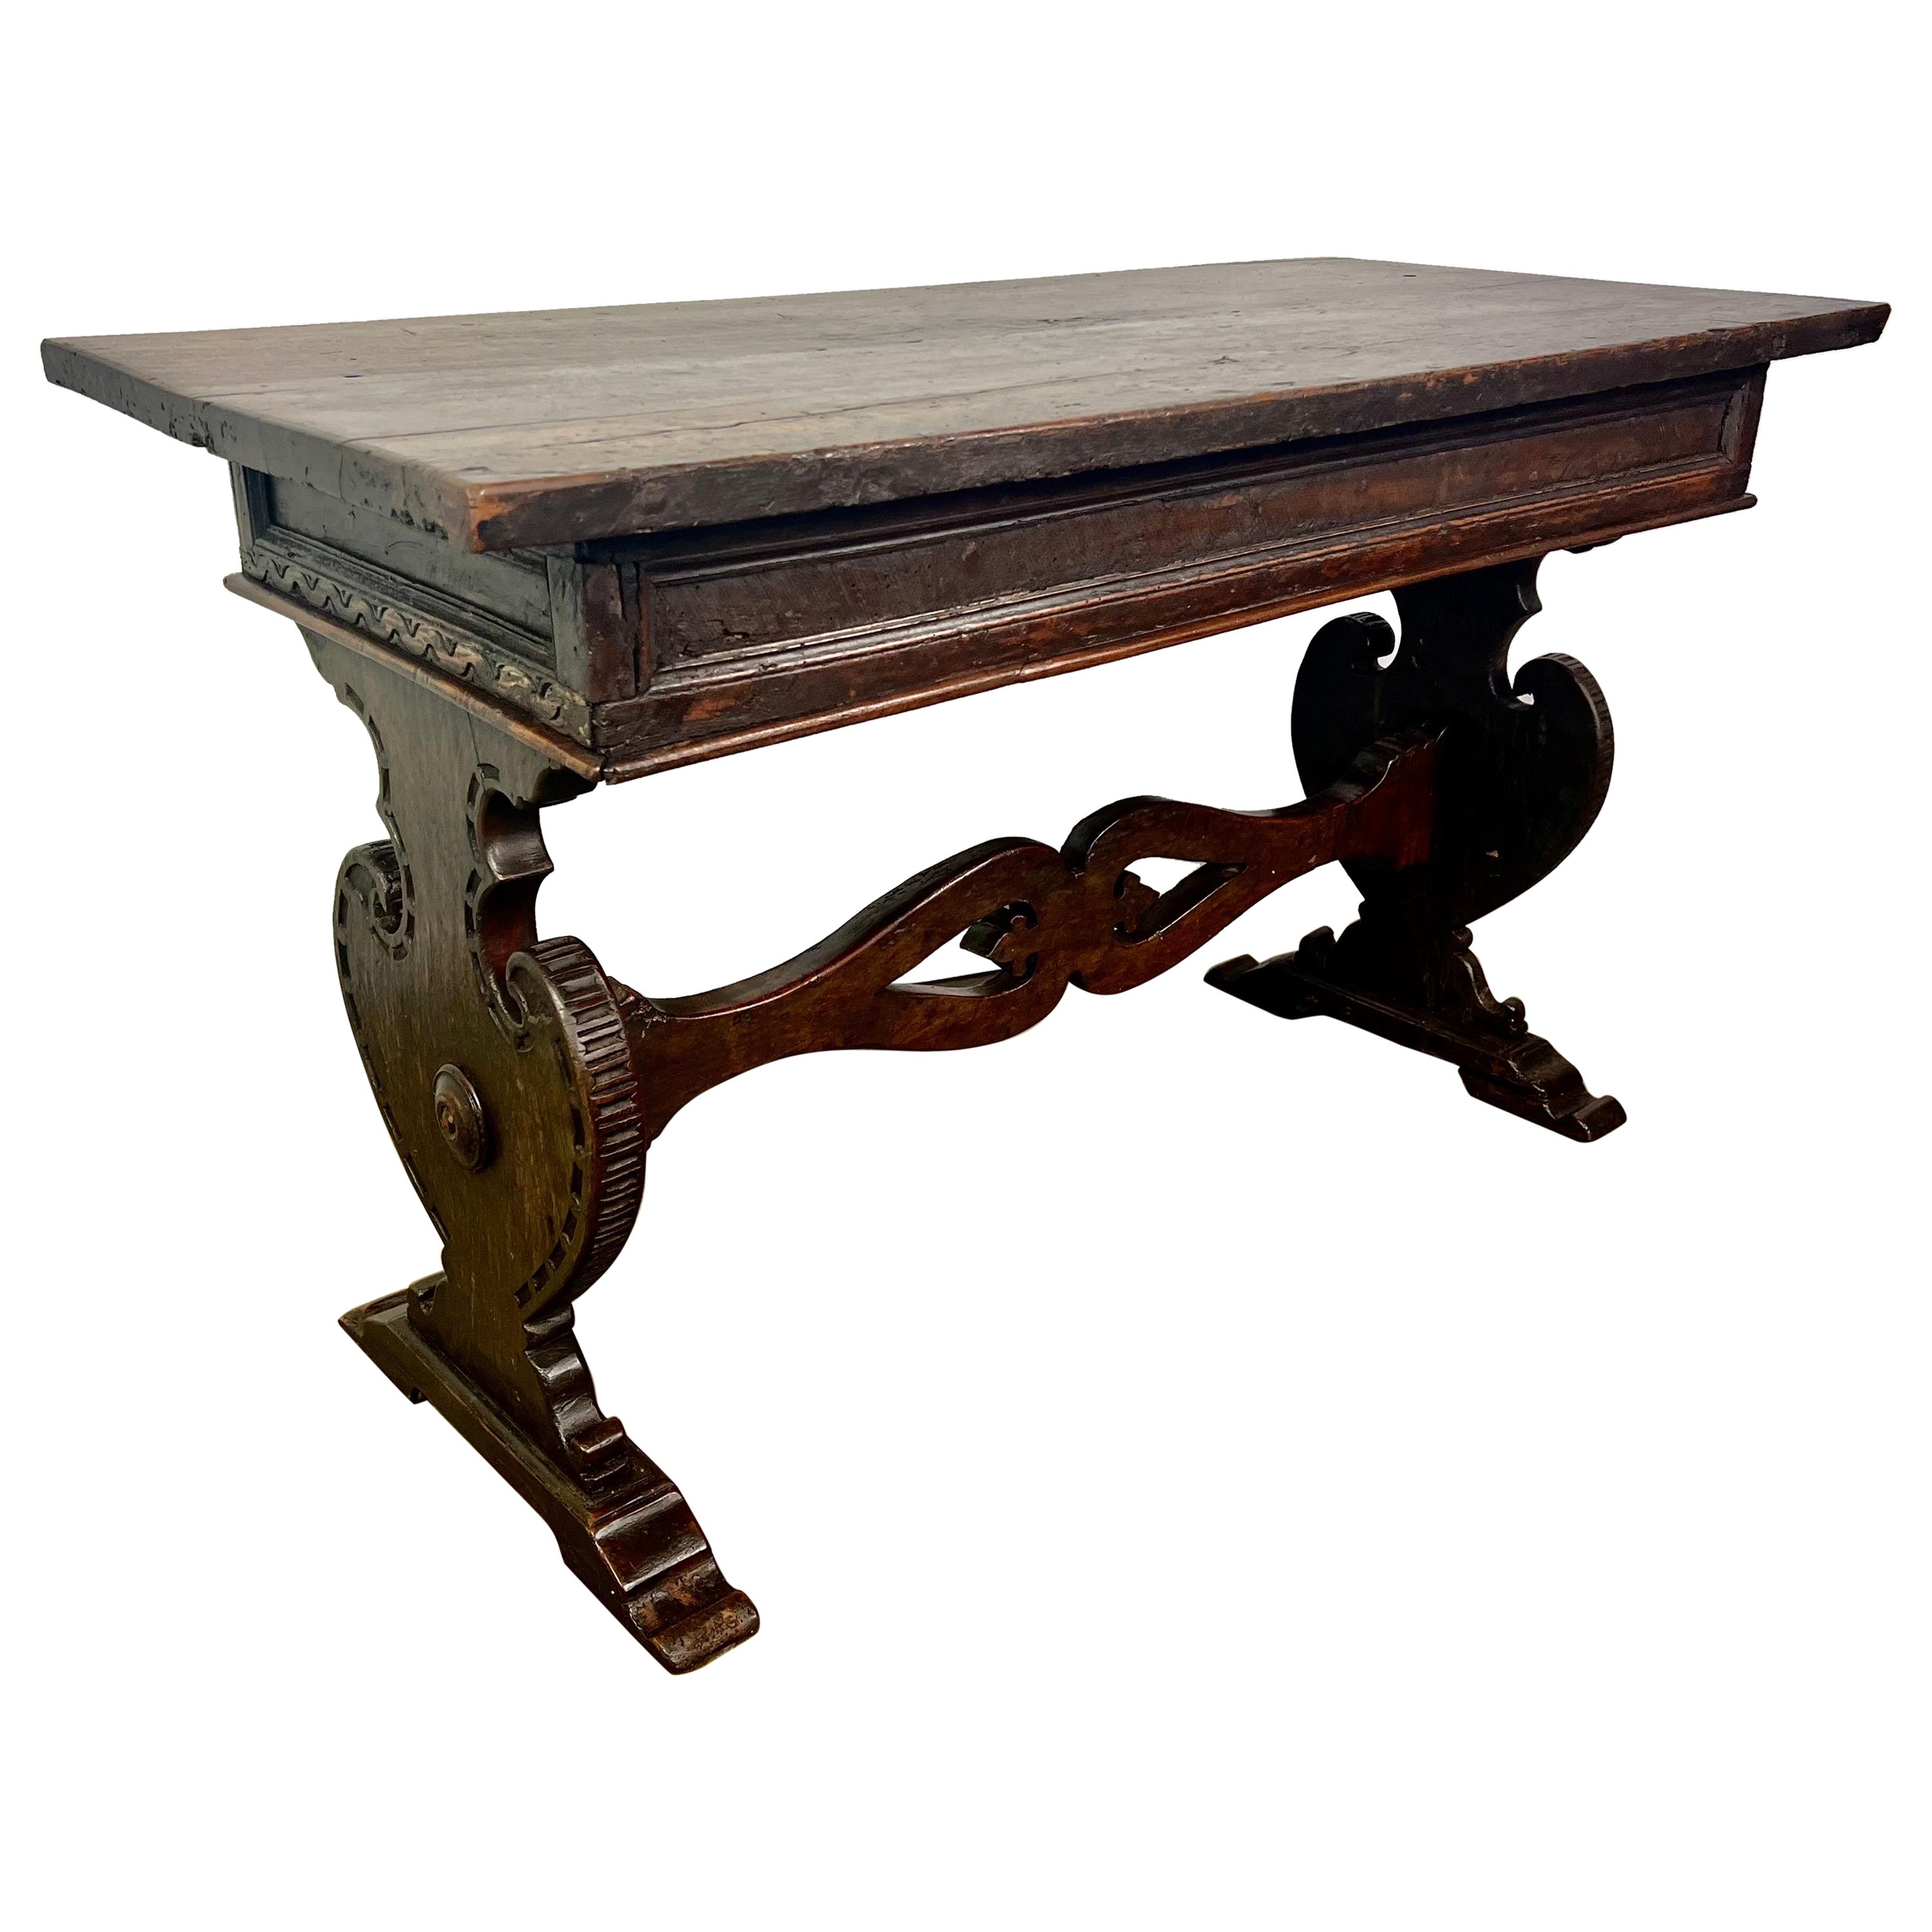 Table à tréteaux italienne du 18e siècle